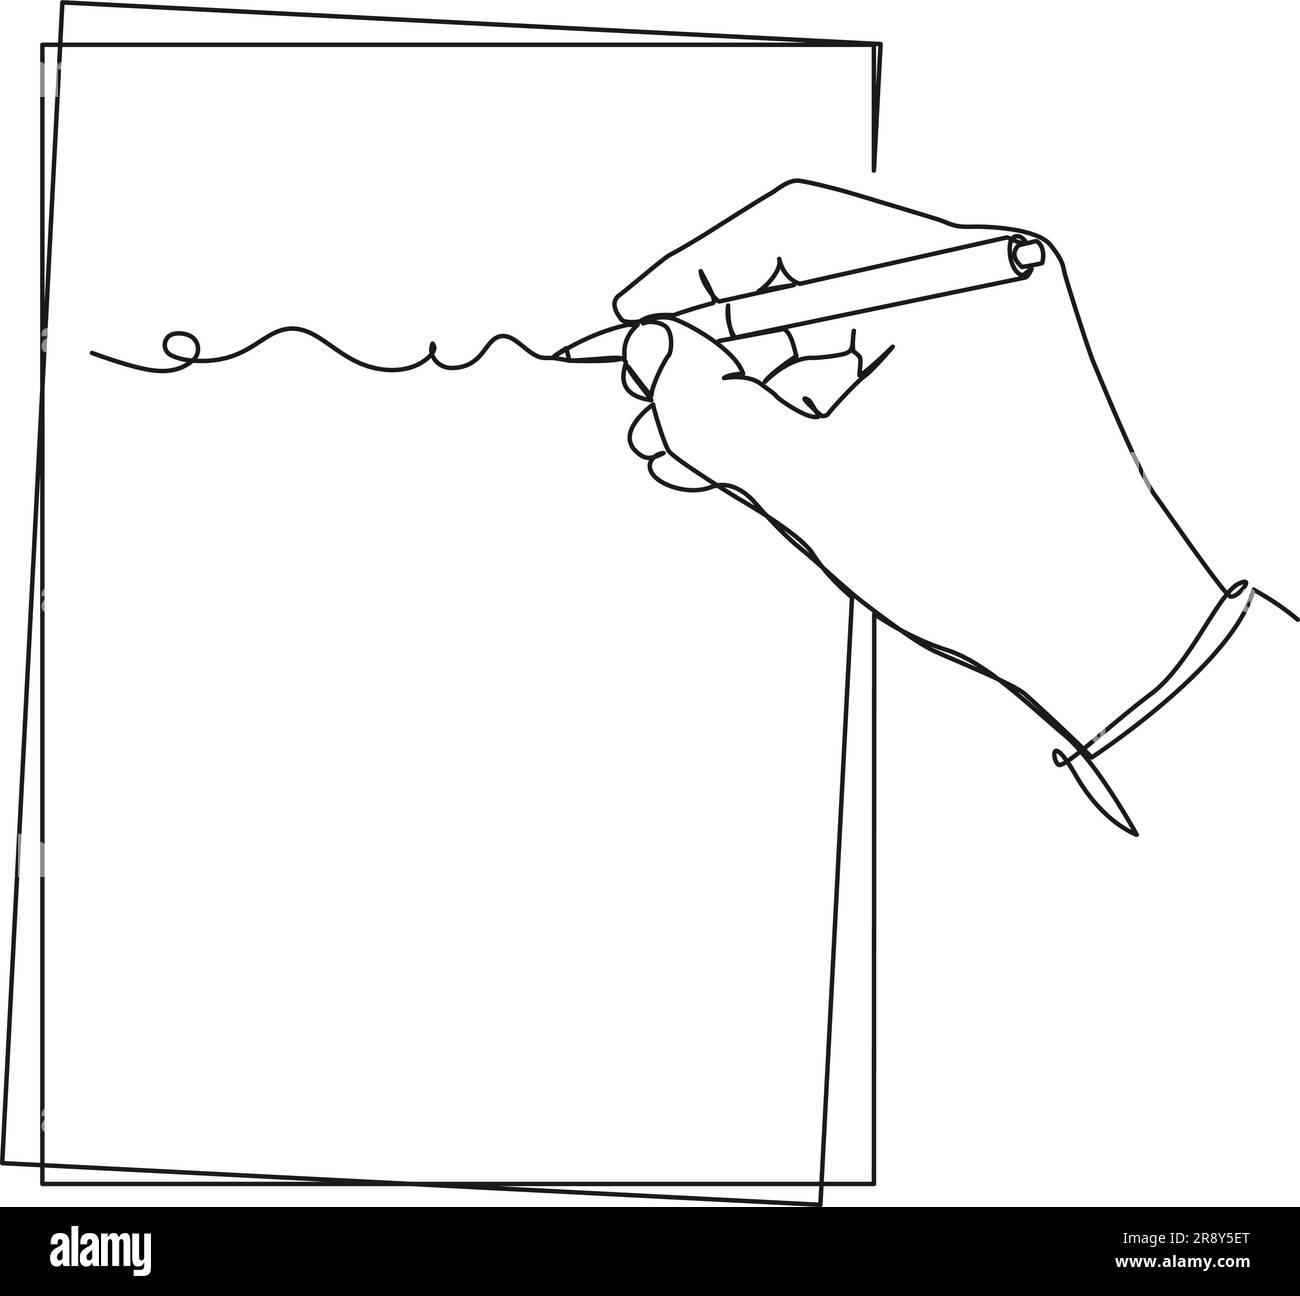 Fortlaufendes einzeiliges Zeichnen von Hand mit Stift auf einem Blatt Papier, Strichgrafiken-Vektordarstellung Stock Vektor